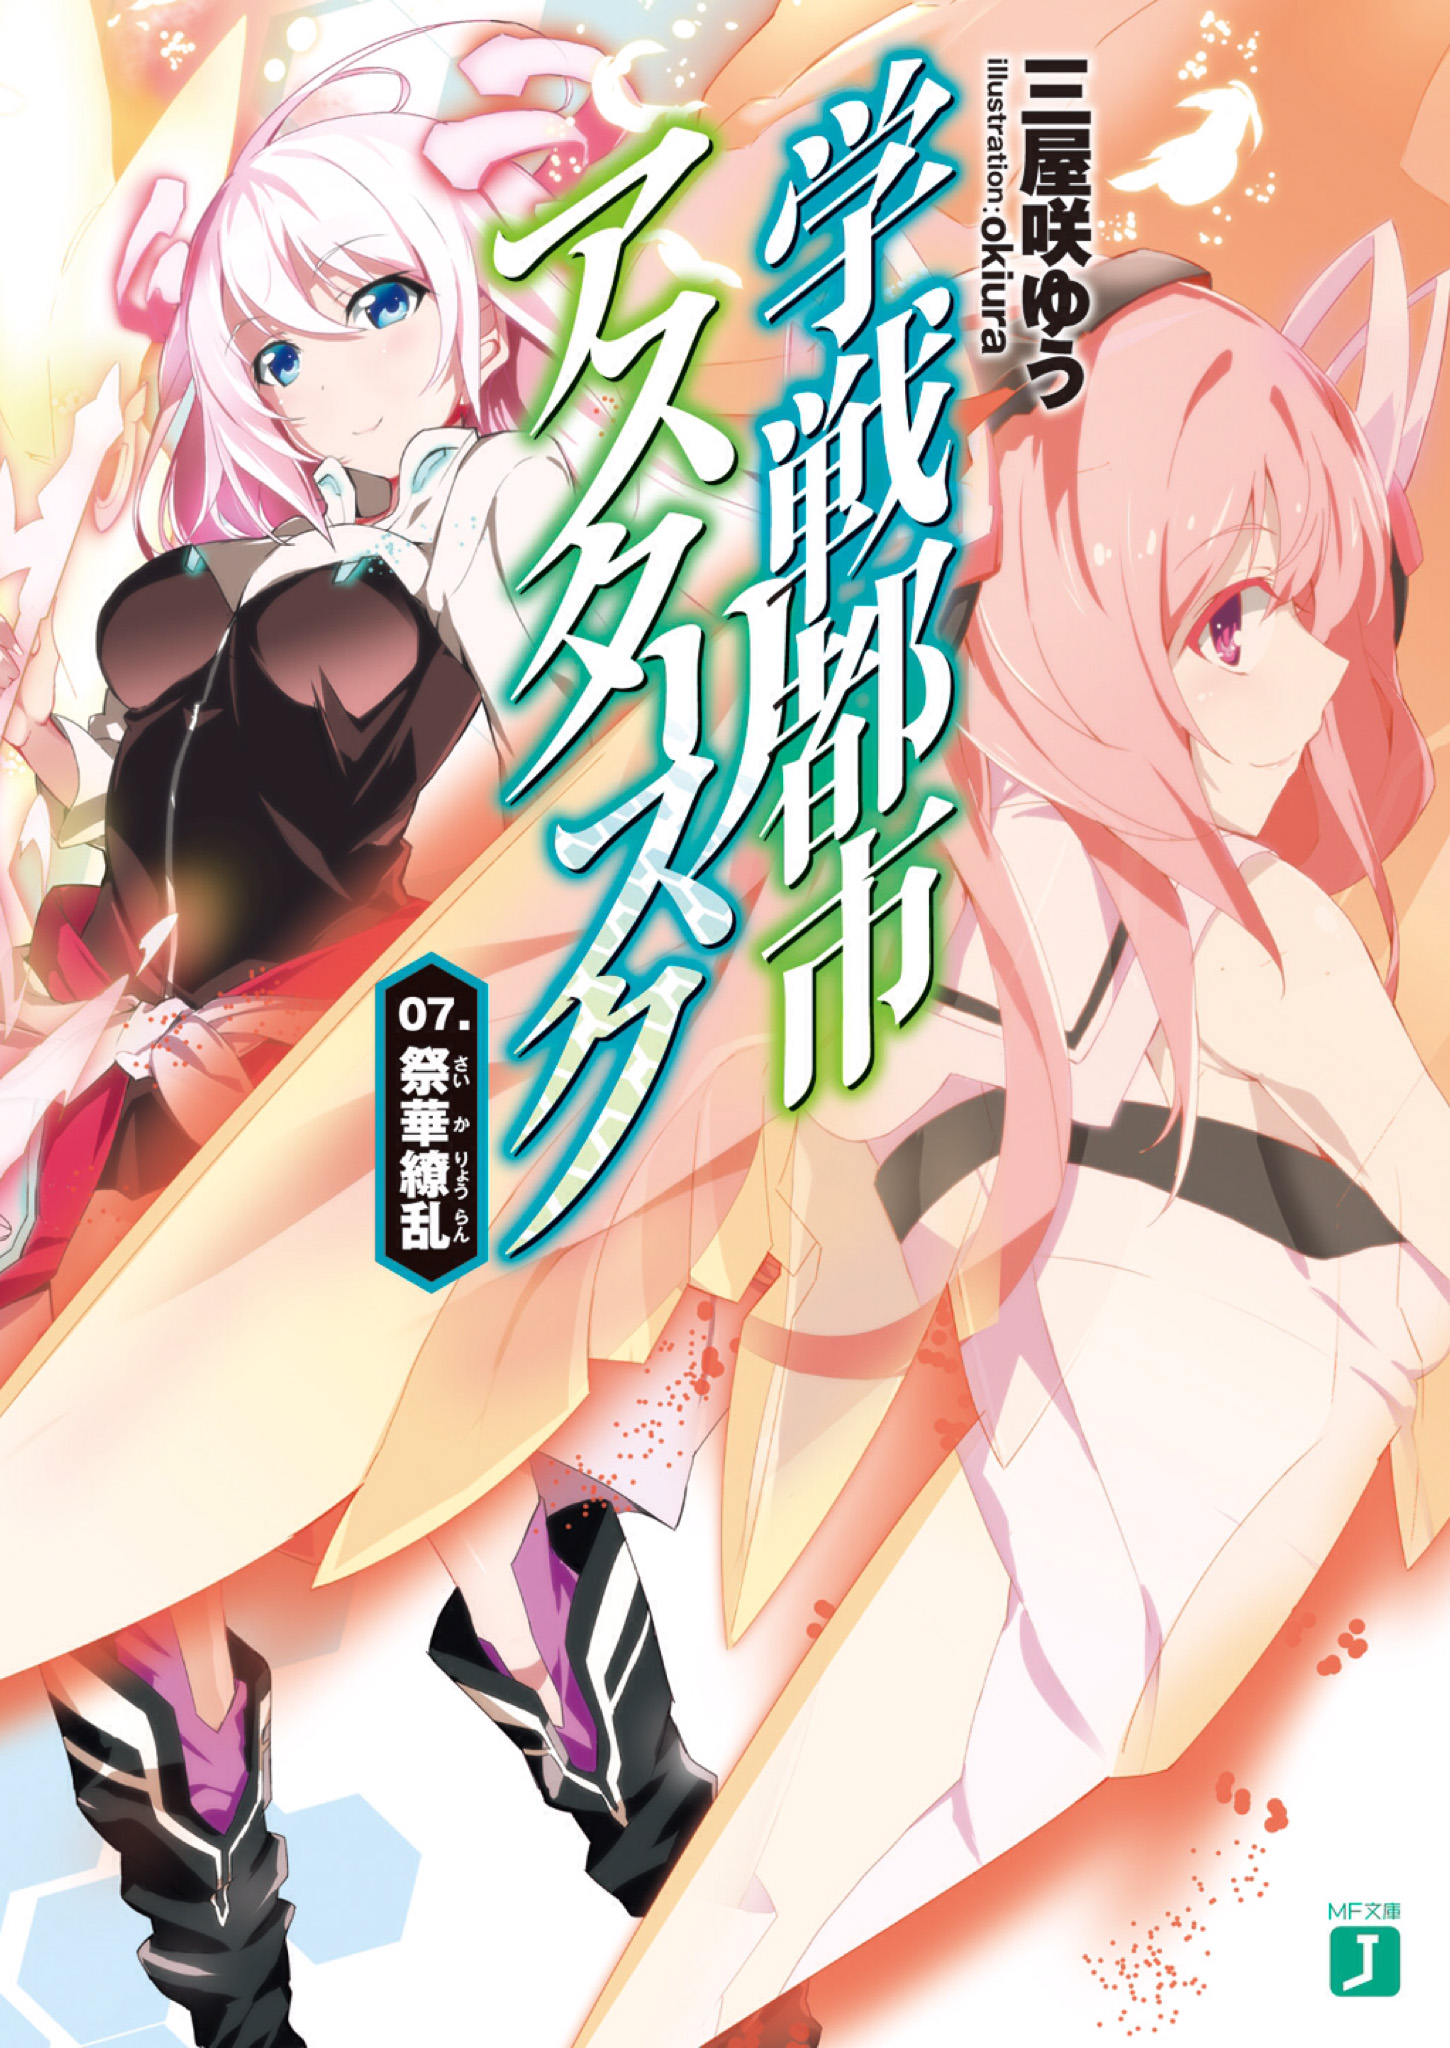 Gakusen Toshi Asterisk Light Novel Cover Vol 05